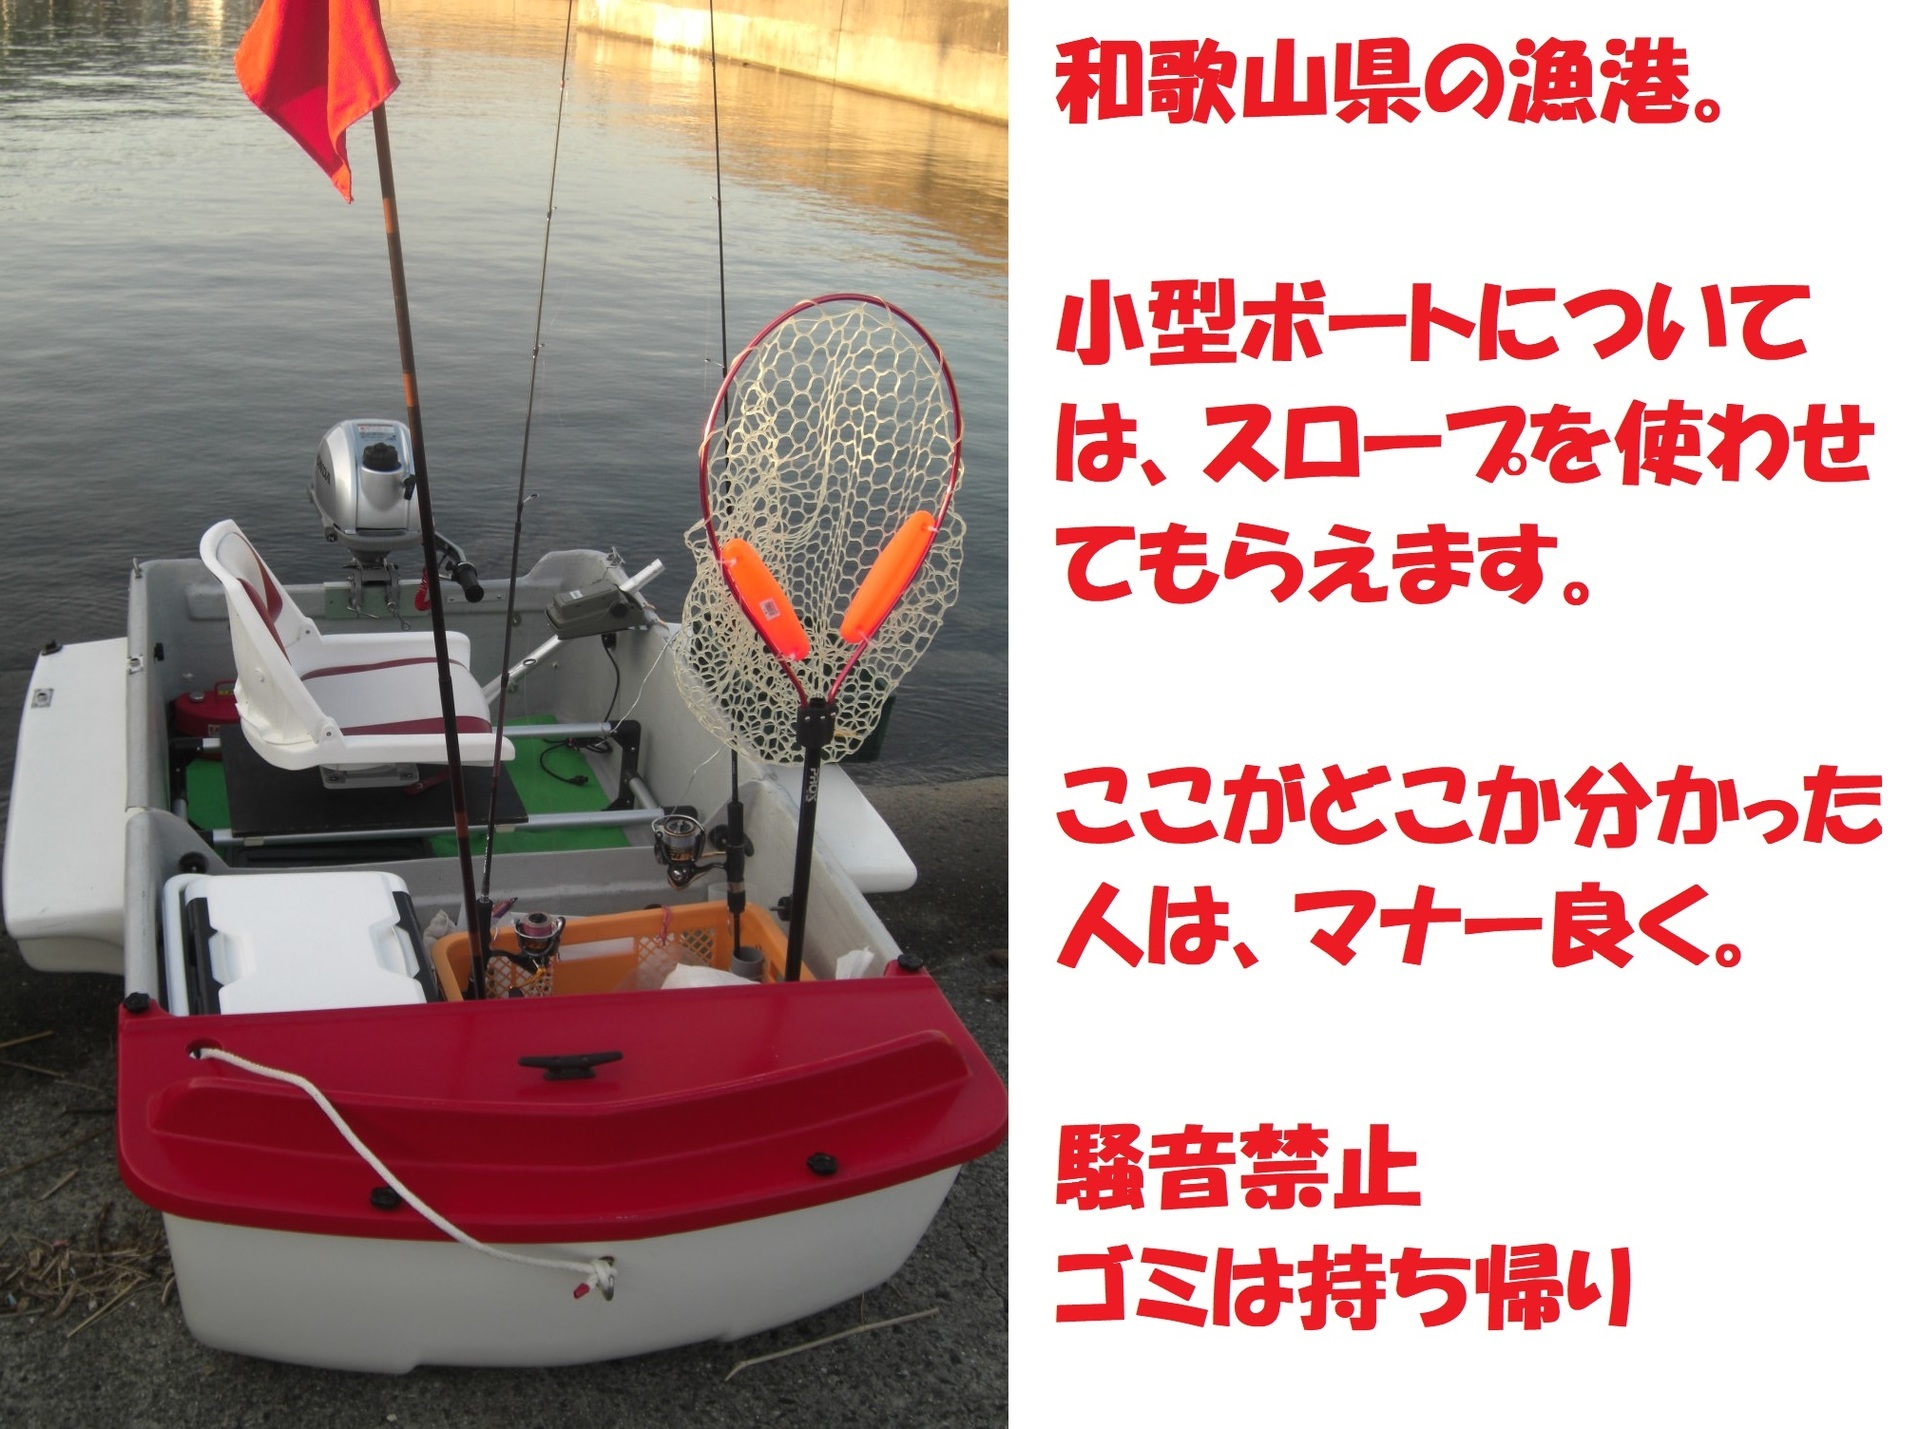 和歌山でミニボート を走らせただけ D ｸﾞｽﾝ 10 3 ぐうたら釣り日記